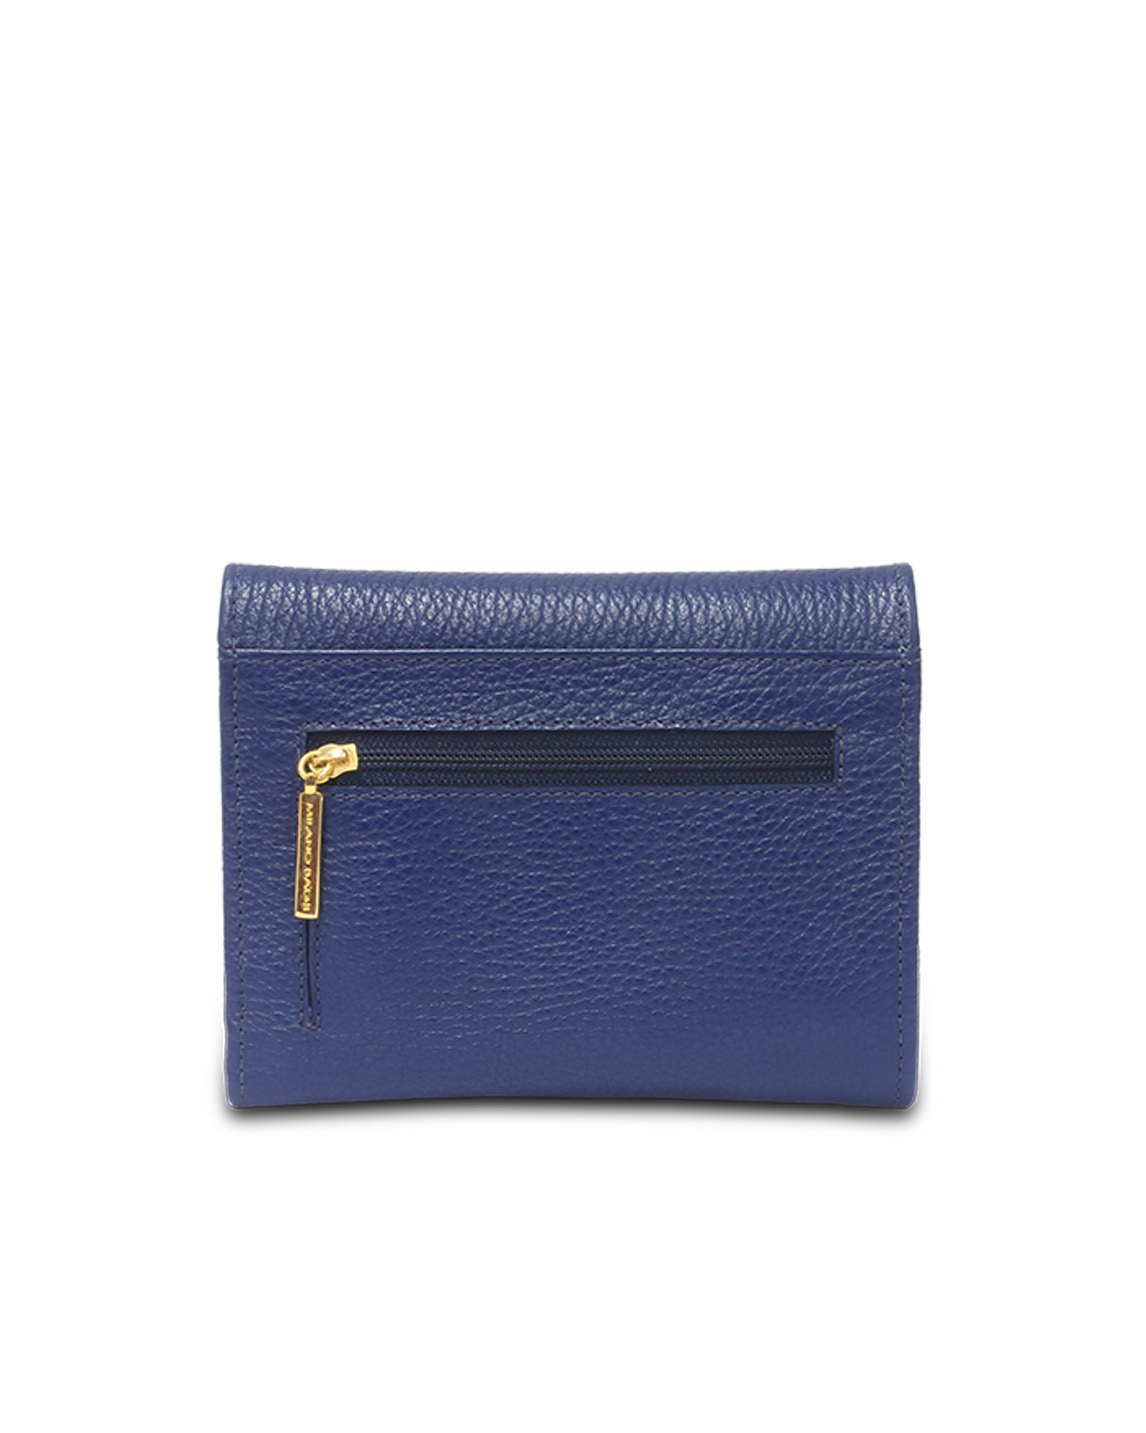 Billetera de Mujer BM-501 Color Azul